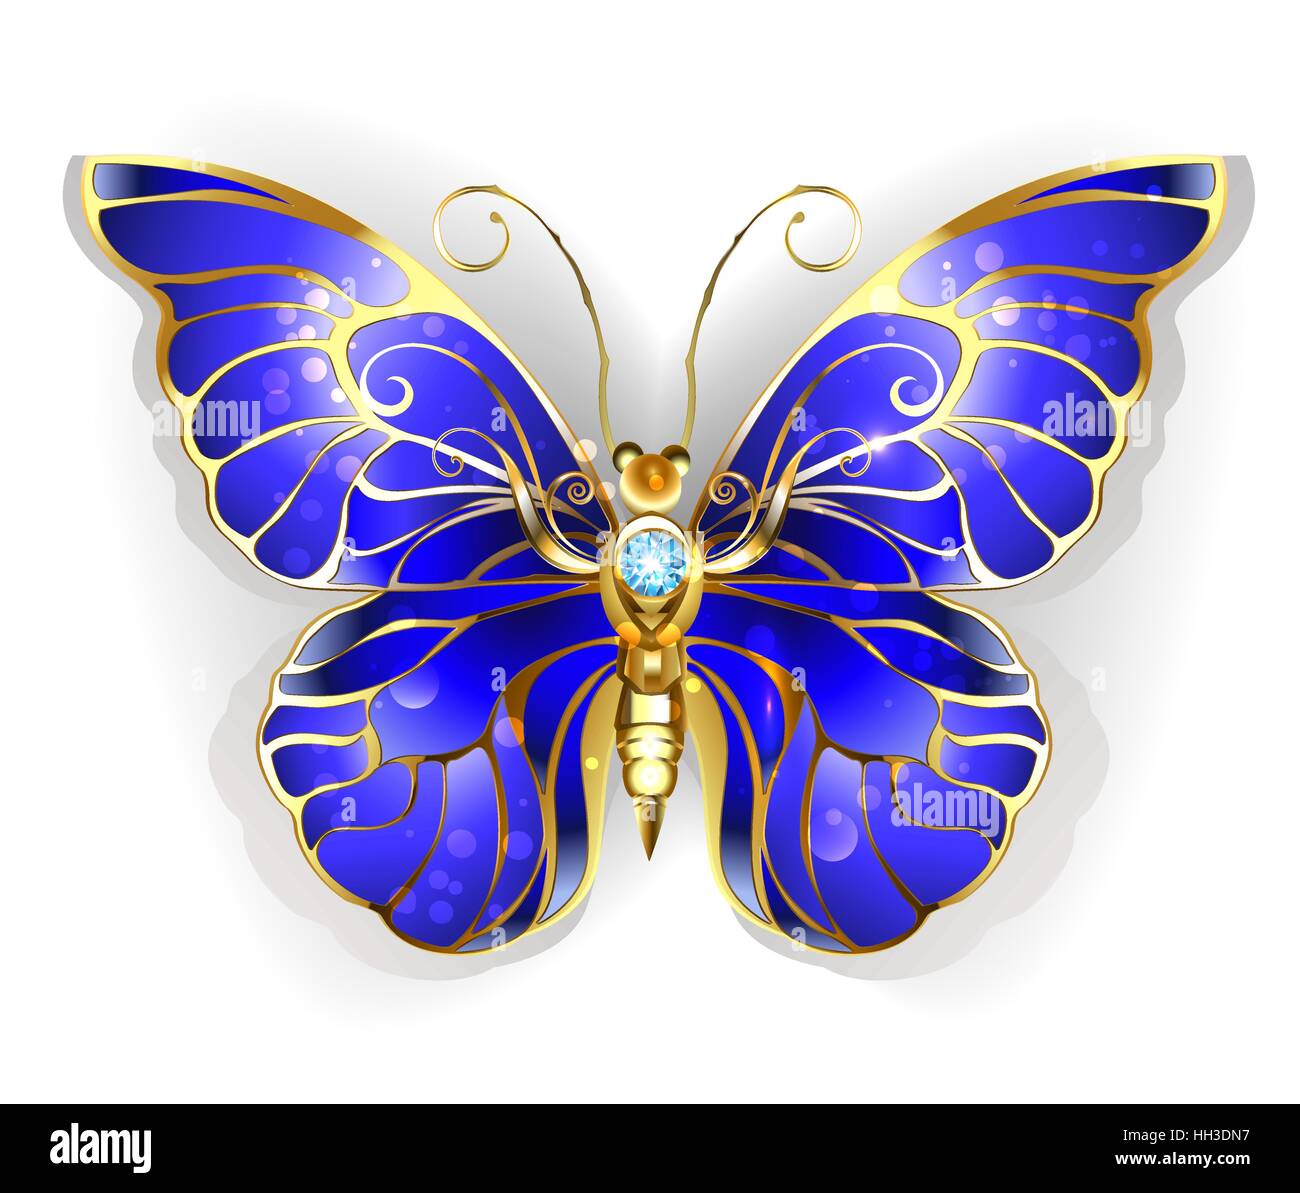 Luxus, Schmuck, gold Schmetterling mit dunkel blauen Saphir Flügeln auf einem weißen Hintergrund. Der goldene Schmetterling Morpho. Stock Vektor